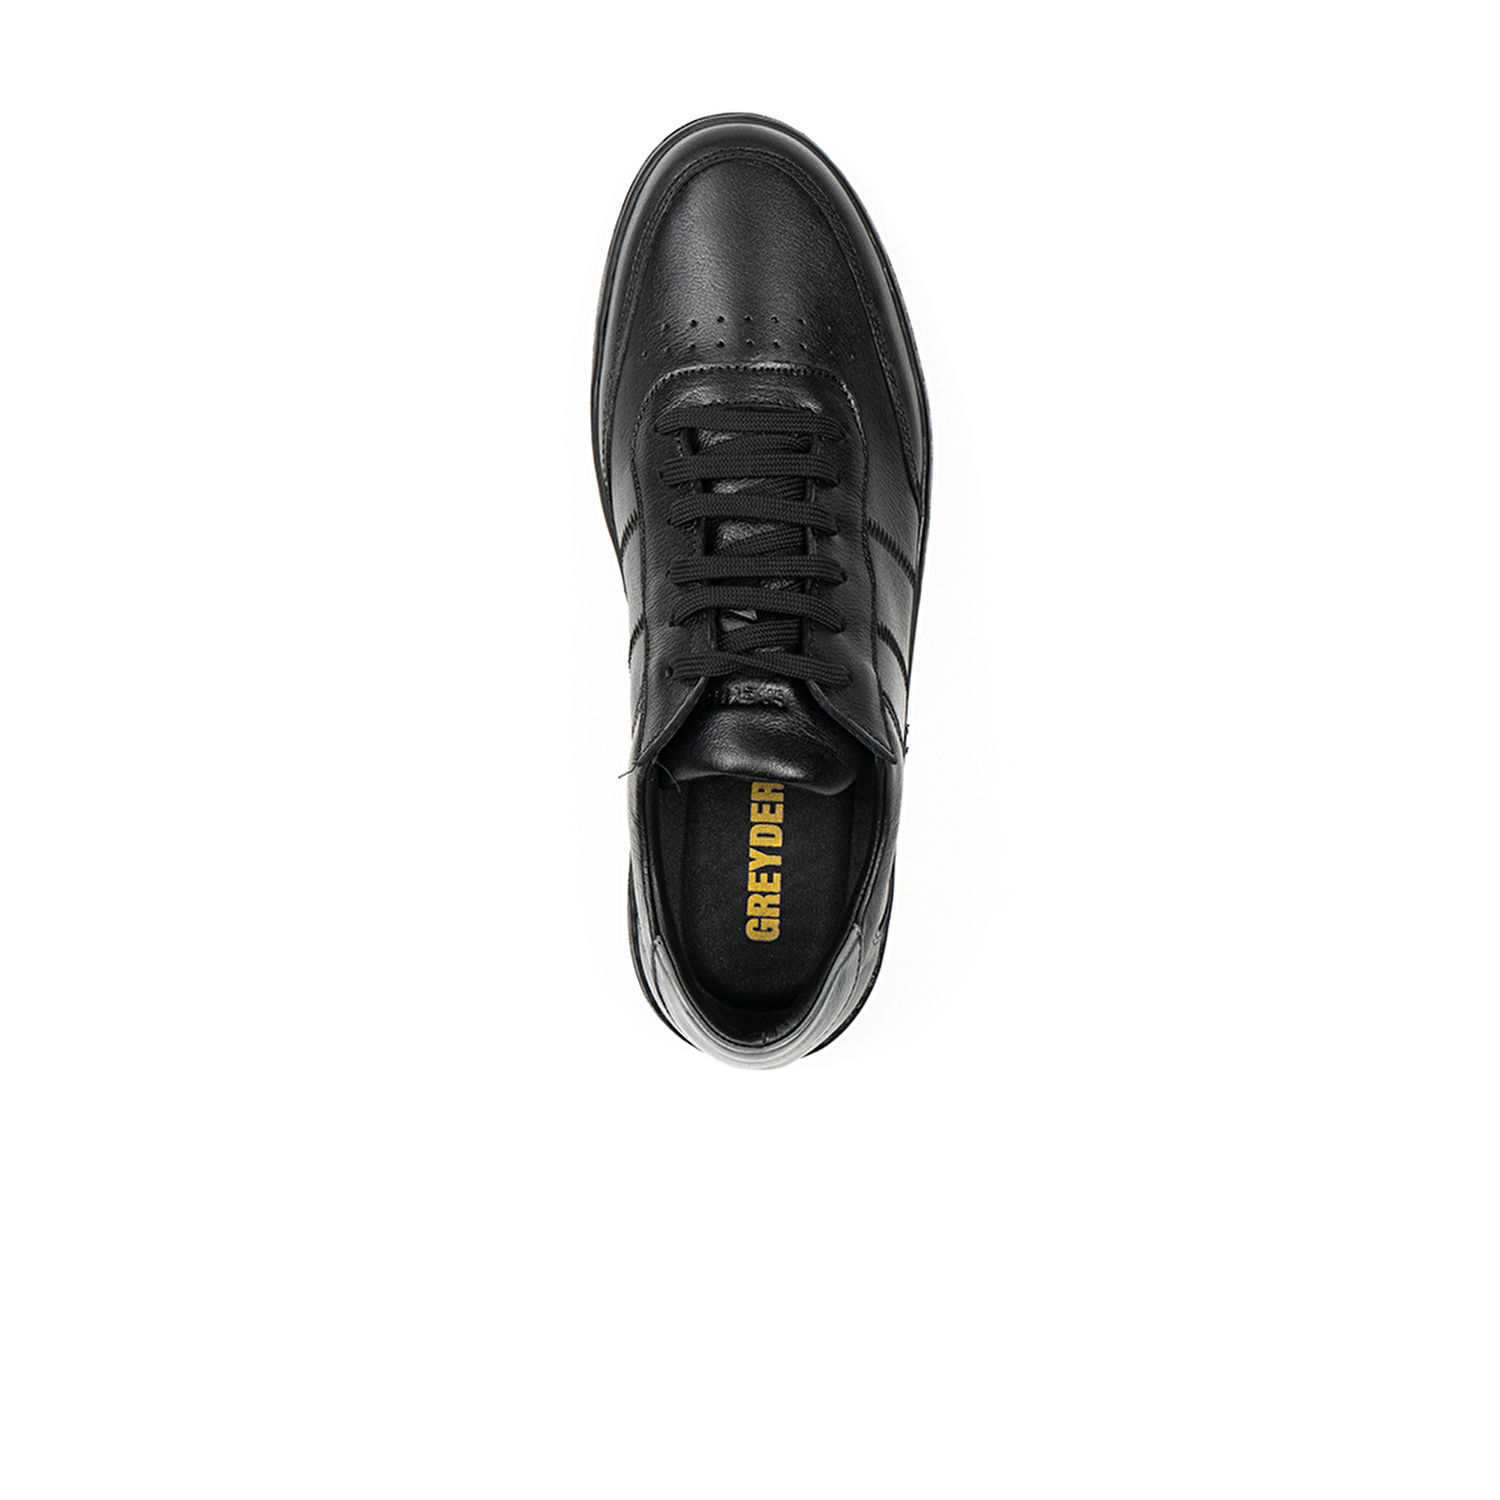 Klasik Erkek Ayakkabı Siyah 67905-5